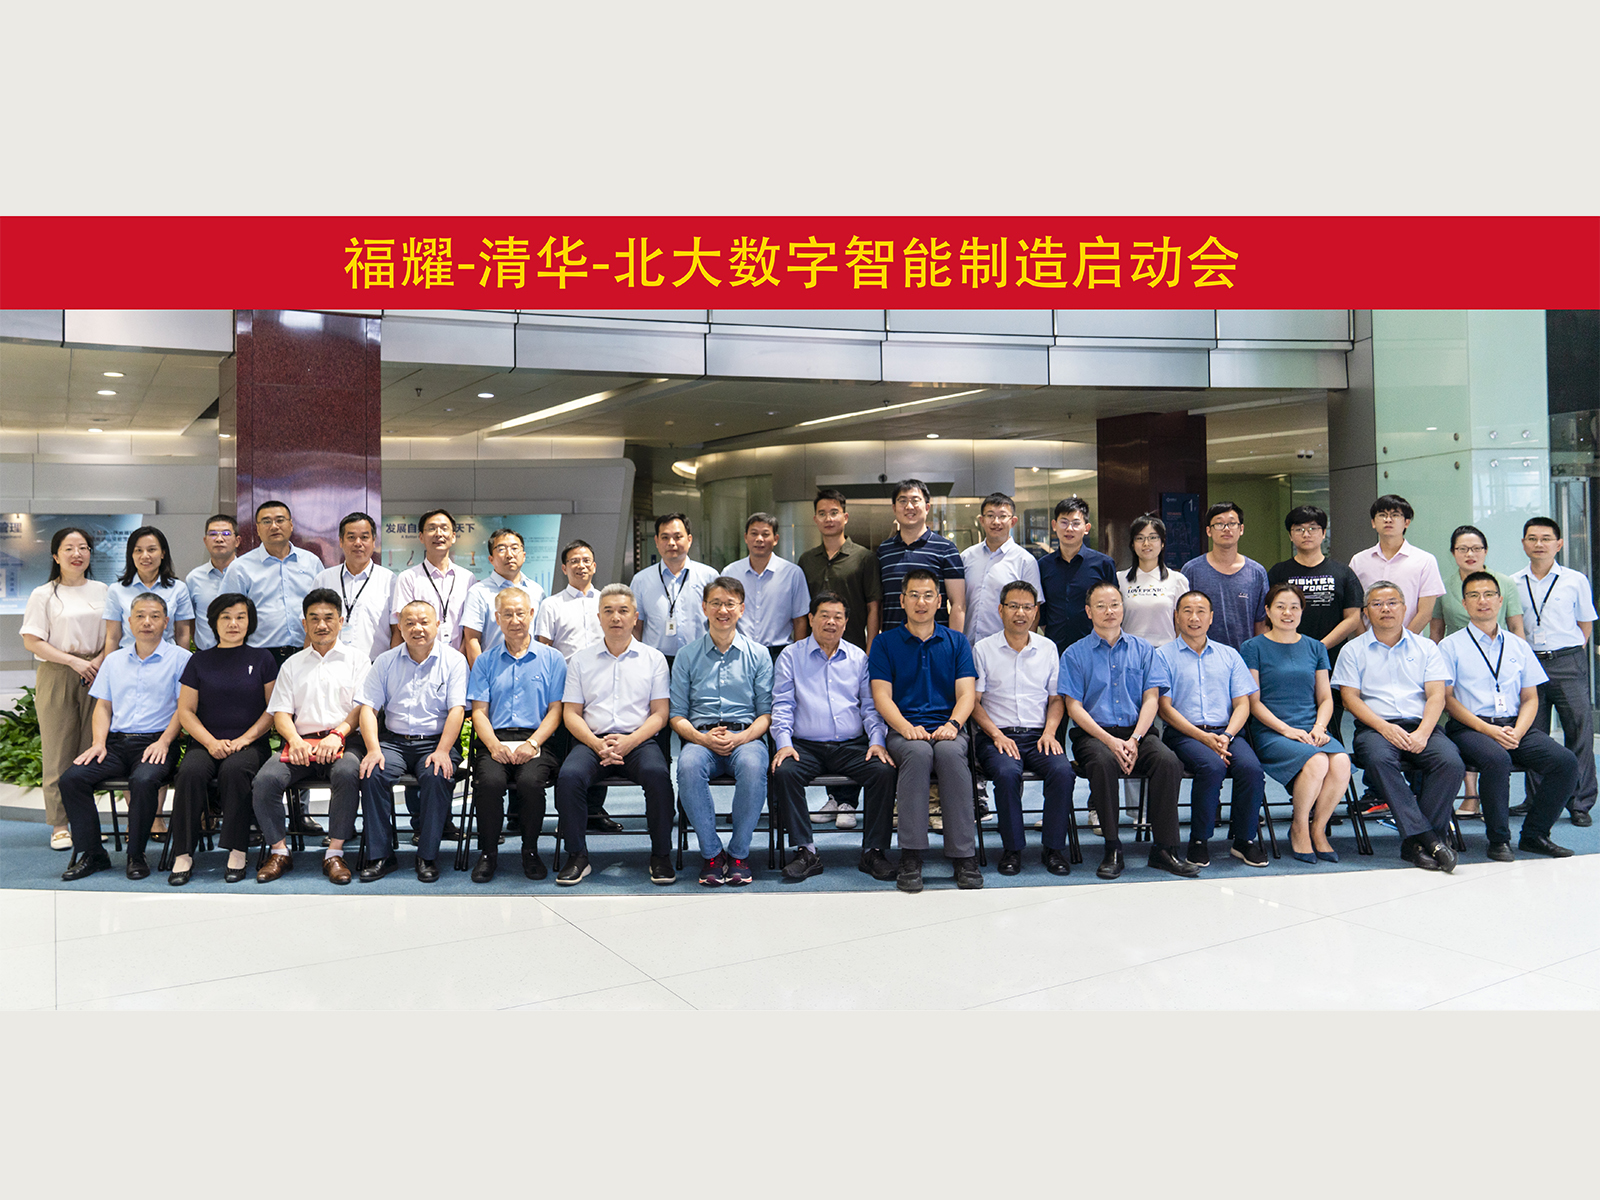 云开·体育(中国)官方网站与清华大学、北京大学组建联合团队，启动数字智能制造创新项目